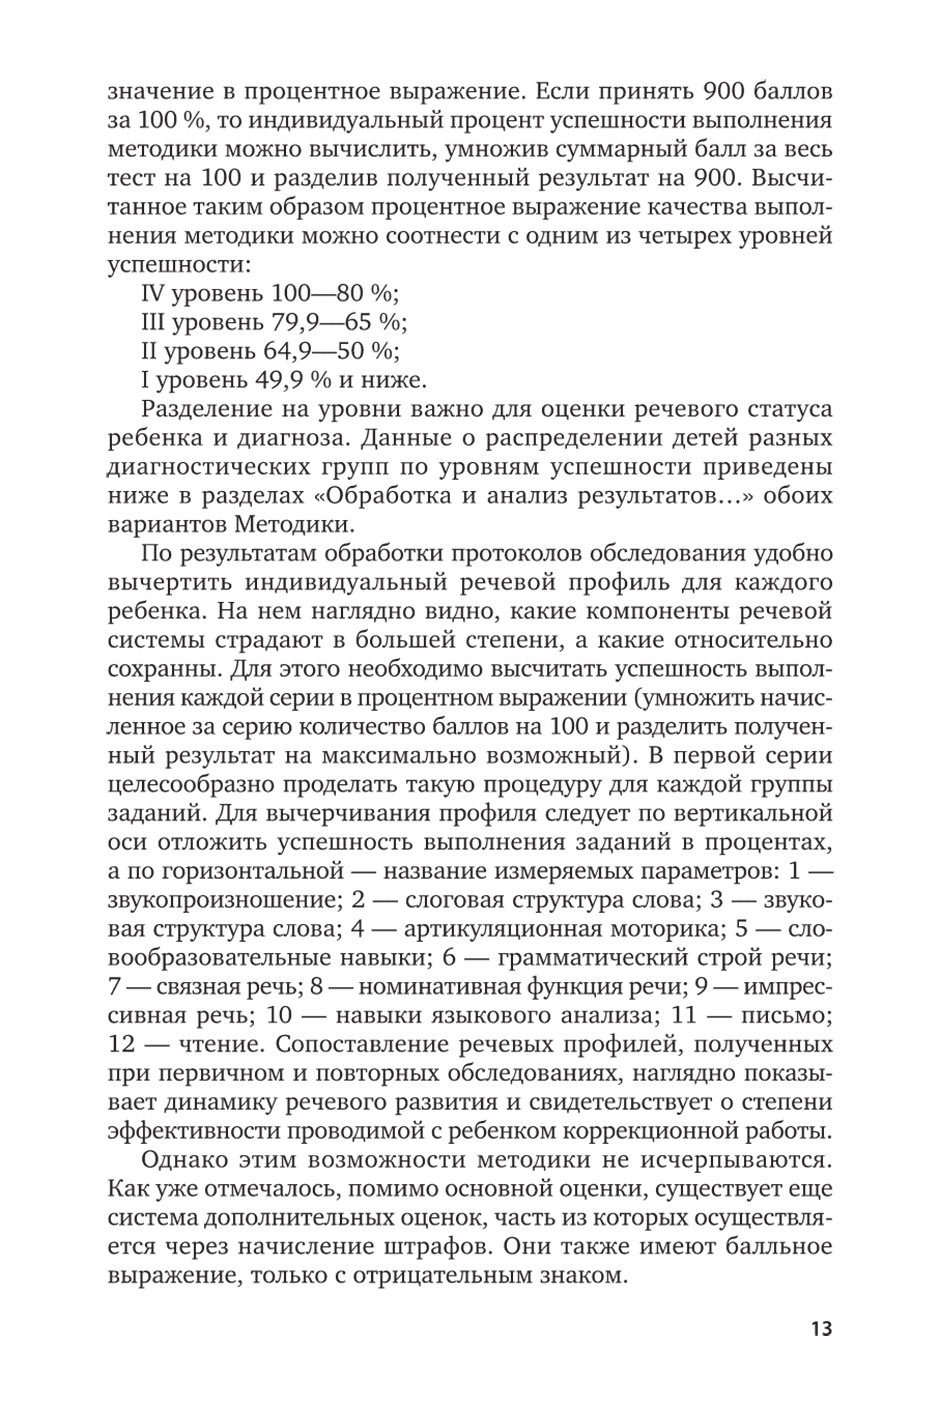 Пример страницы из книги "Диагностика речевых нарушений школьников" - Ахутина Т. В., Фотекова Т. А.